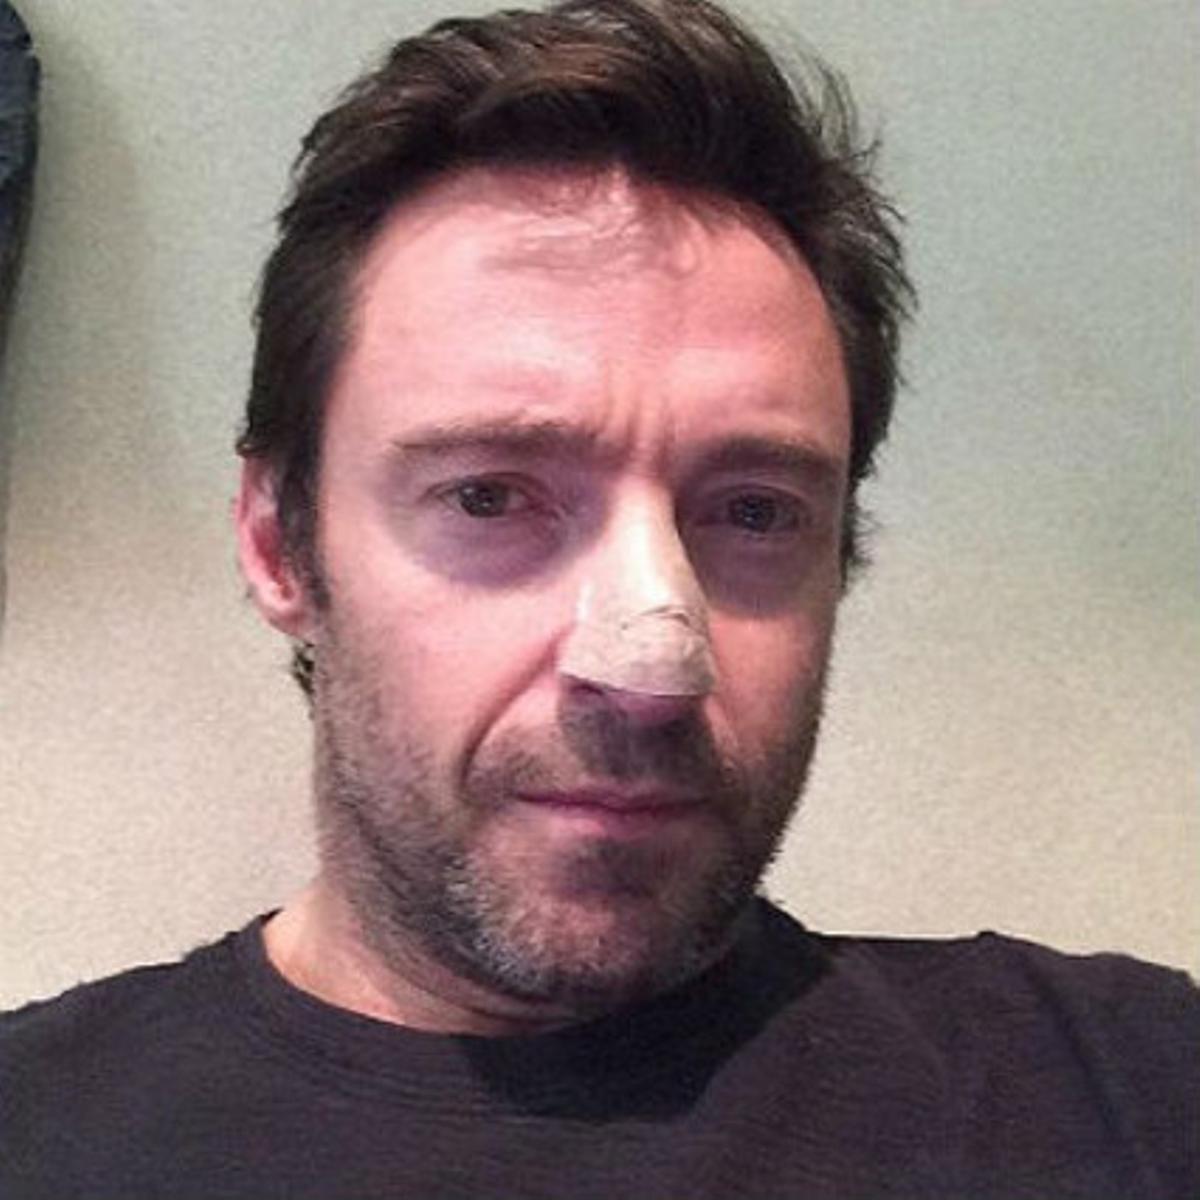 Hugh Jackman, con tiritas en la nariz, en la foto que ha colgado en Instagram.